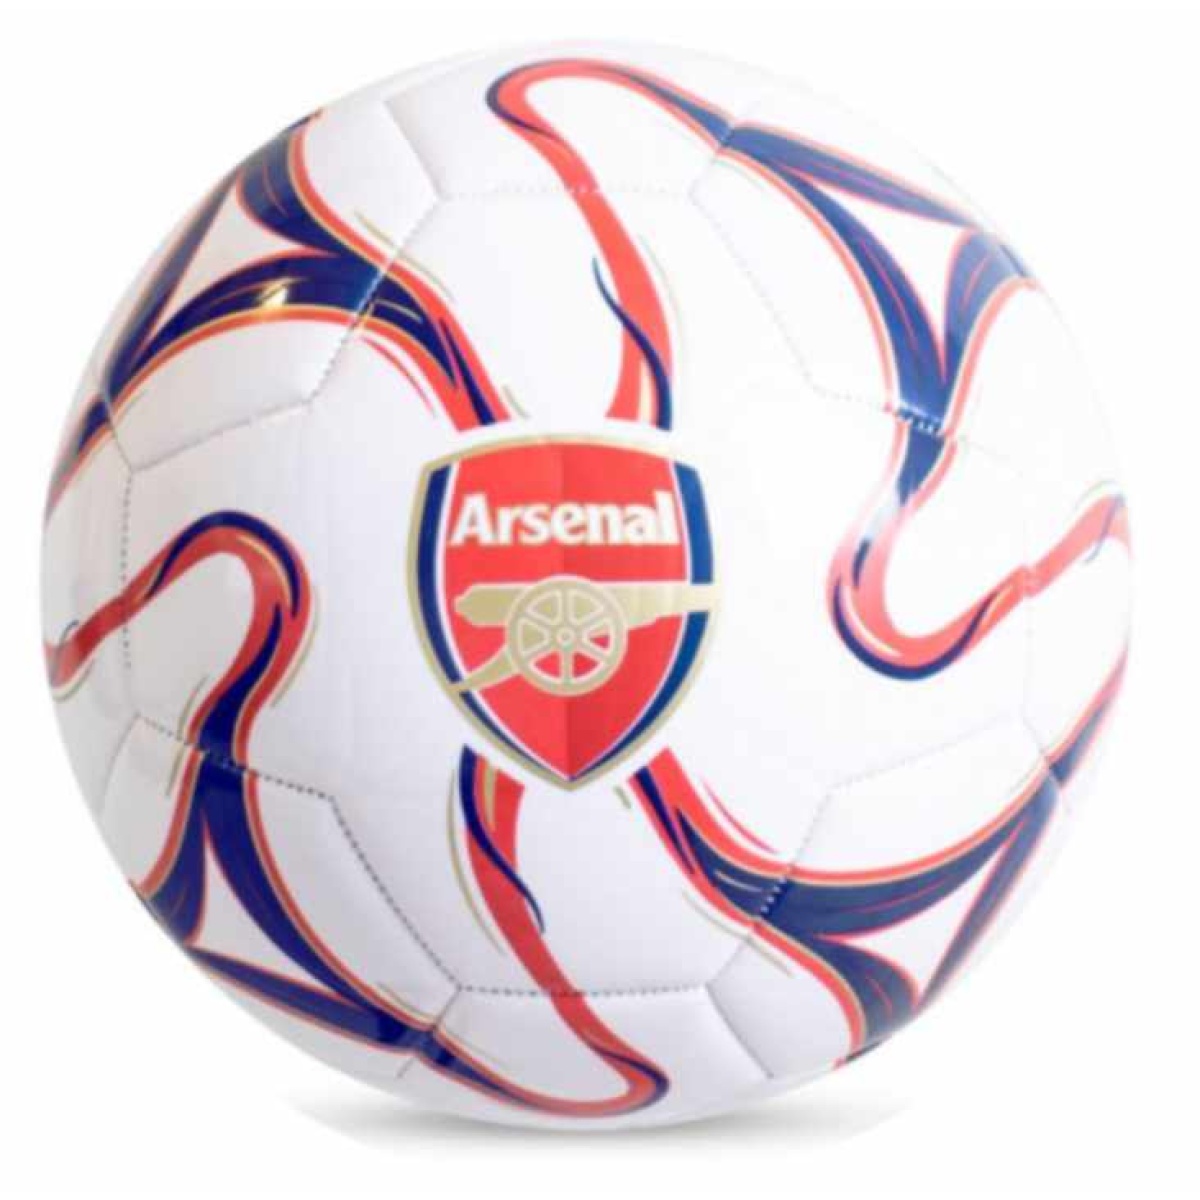 Arsenal Cosmos Football, Football Souvenirs, Souvenirs